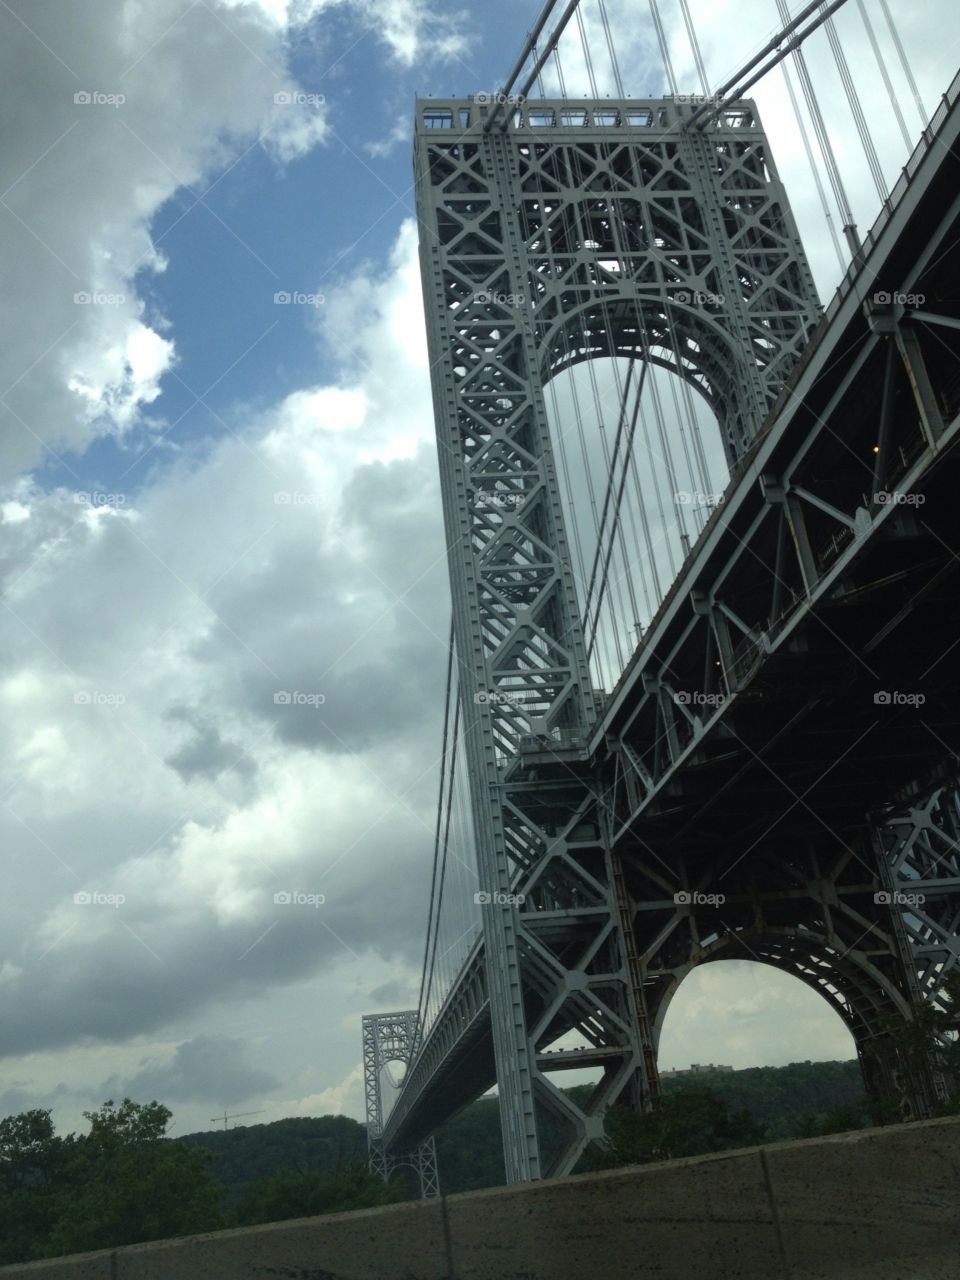  Bridge in New York